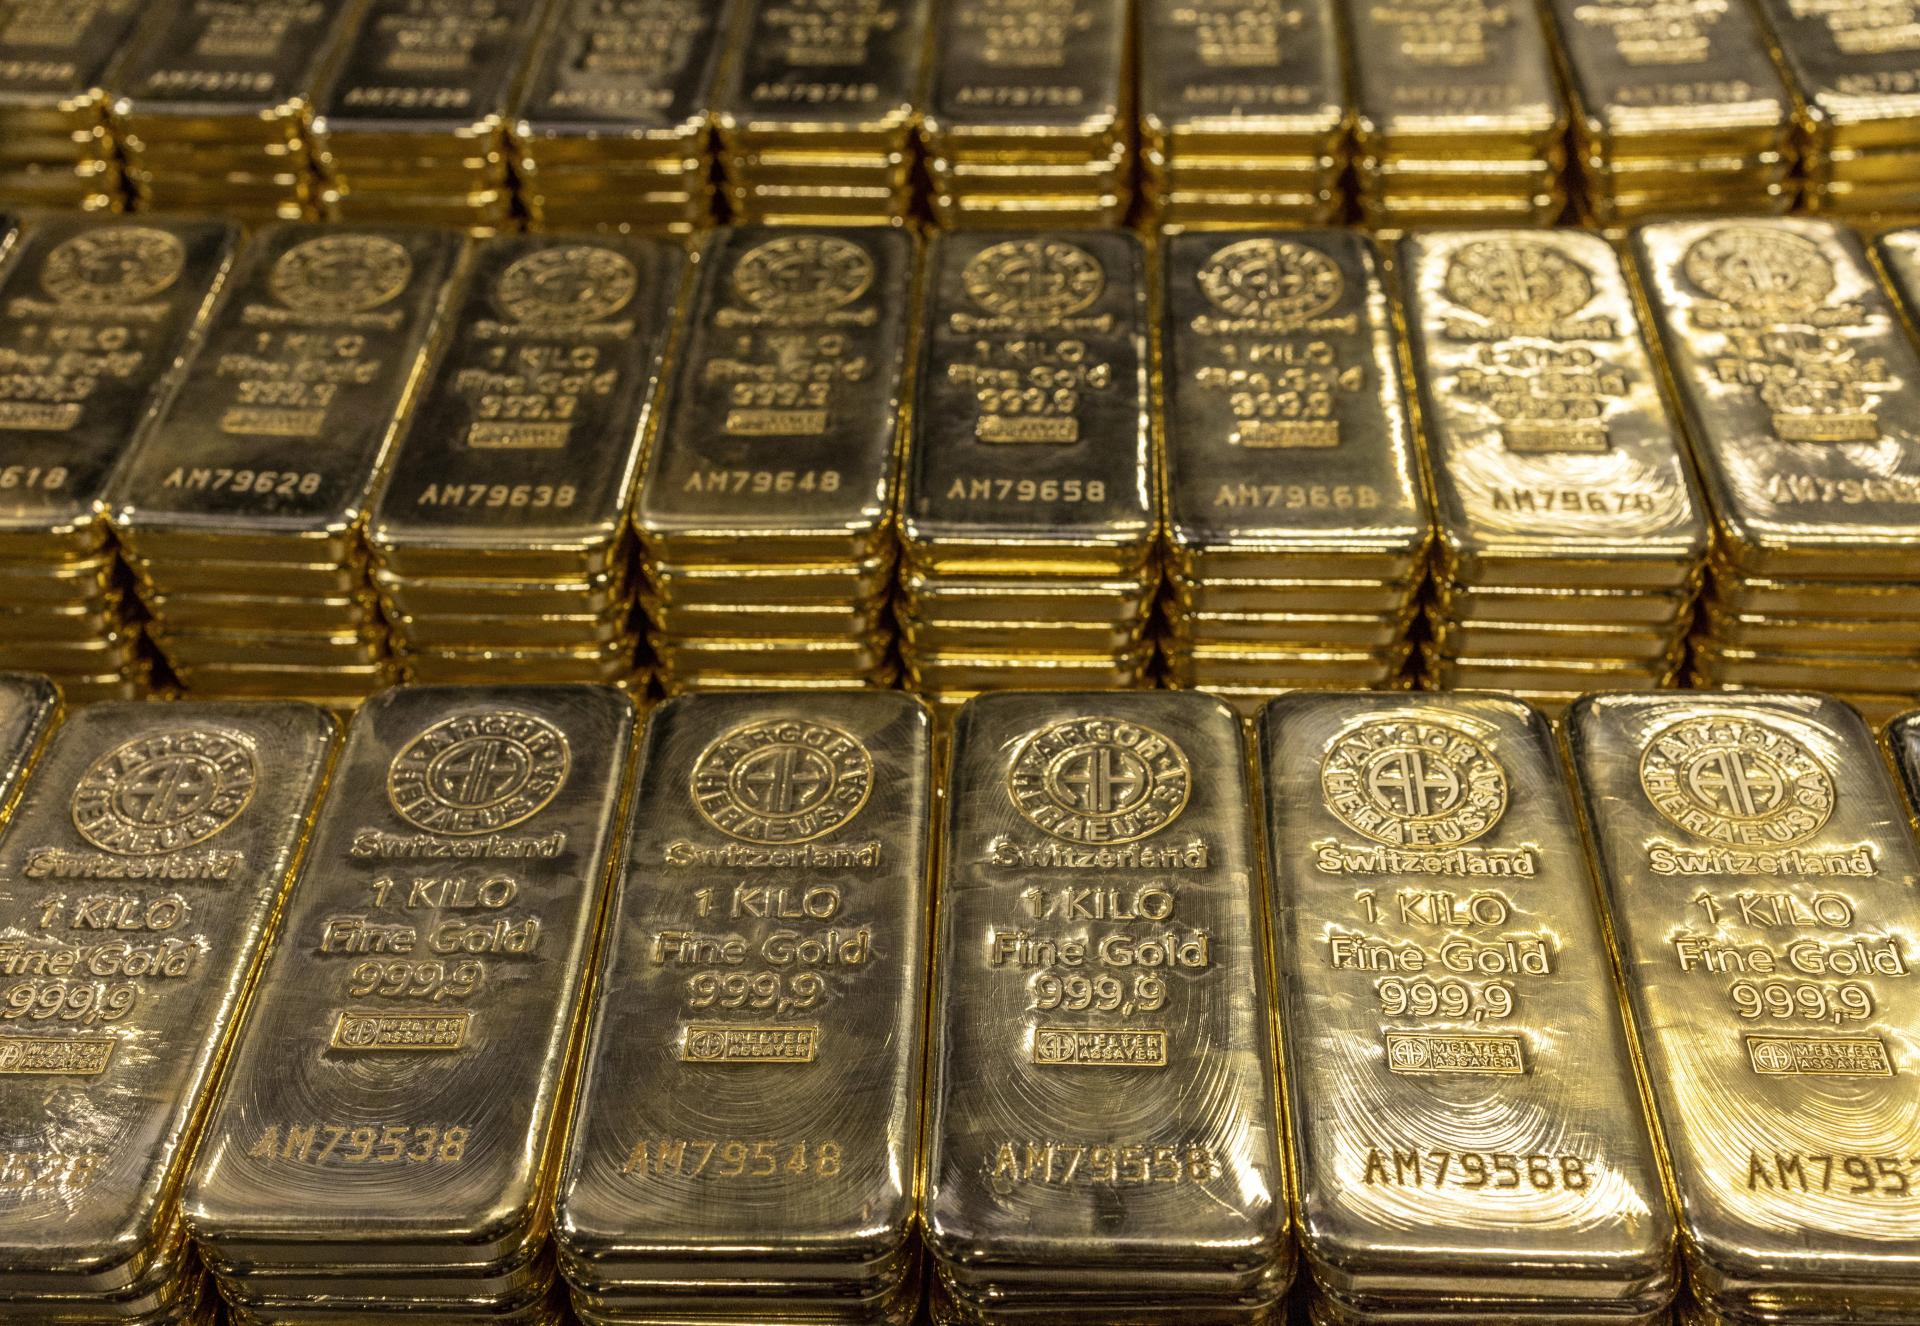 Smeruje svet do ďalších problémov? Centrálne banky vo veľkom skupujú zlato